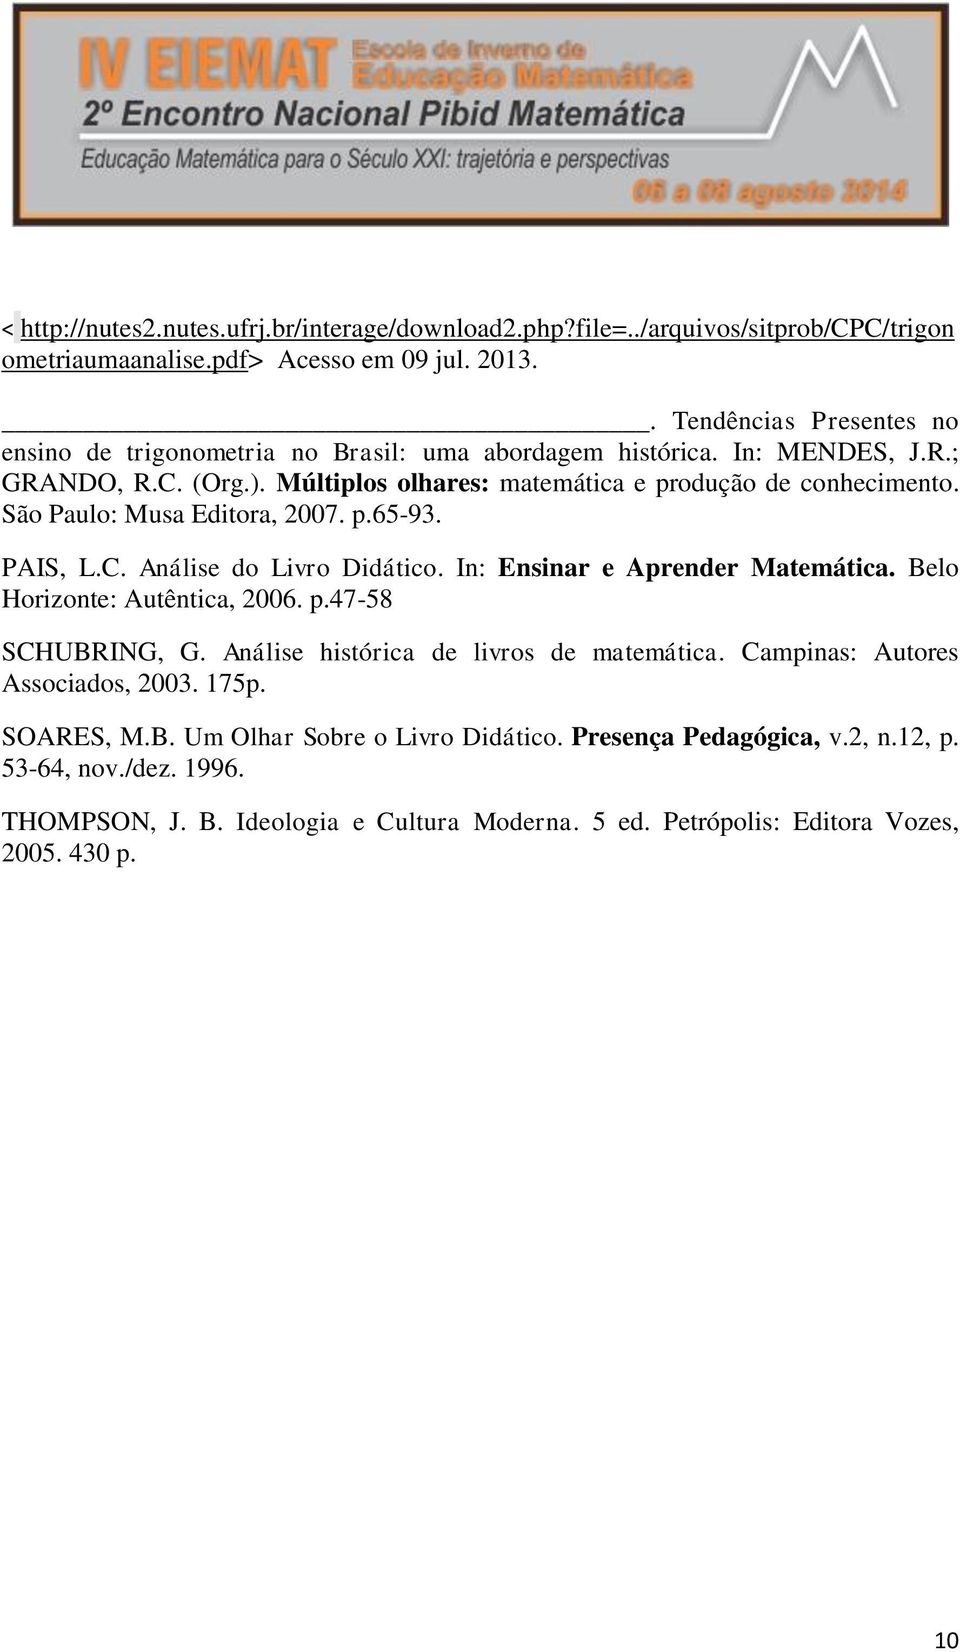 São Paulo: Musa Editora, 2007. p.65-93. PAIS, L.C. Análise do Livro Didático. In: Ensinar e Aprender Matemática. Belo Horizonte: Autêntica, 2006. p.47-58 SCHUBRING, G.